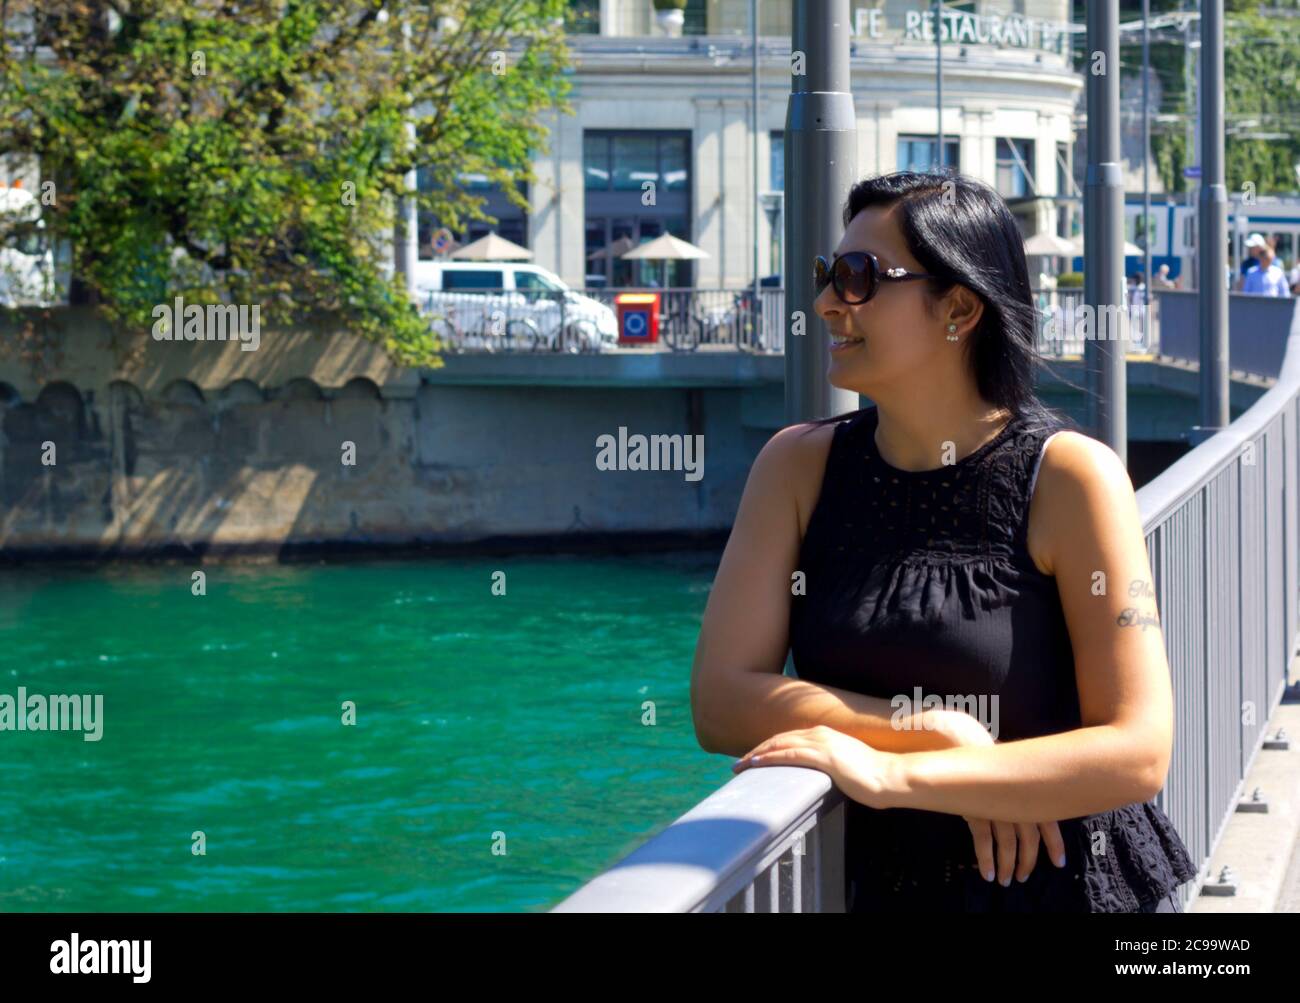 Switzerland Europe Zurich City People Stockfotos und -bilder Kaufen - Alamy